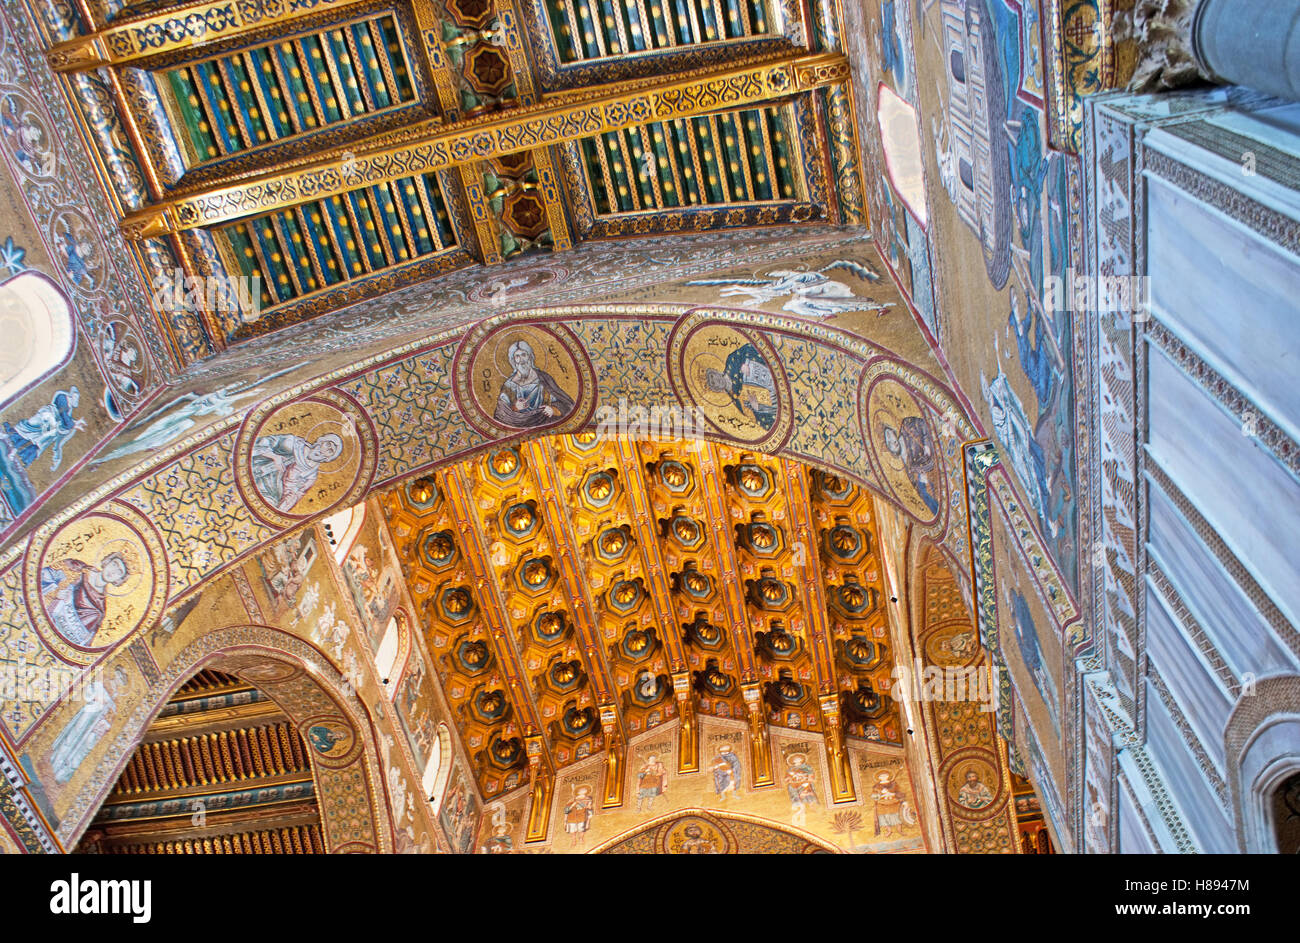 La cathédrale de Monreale décors complexes : la pierre sculptée en bois, détails, bien des modèles peints, mosaïques, Sicile, Italie Banque D'Images